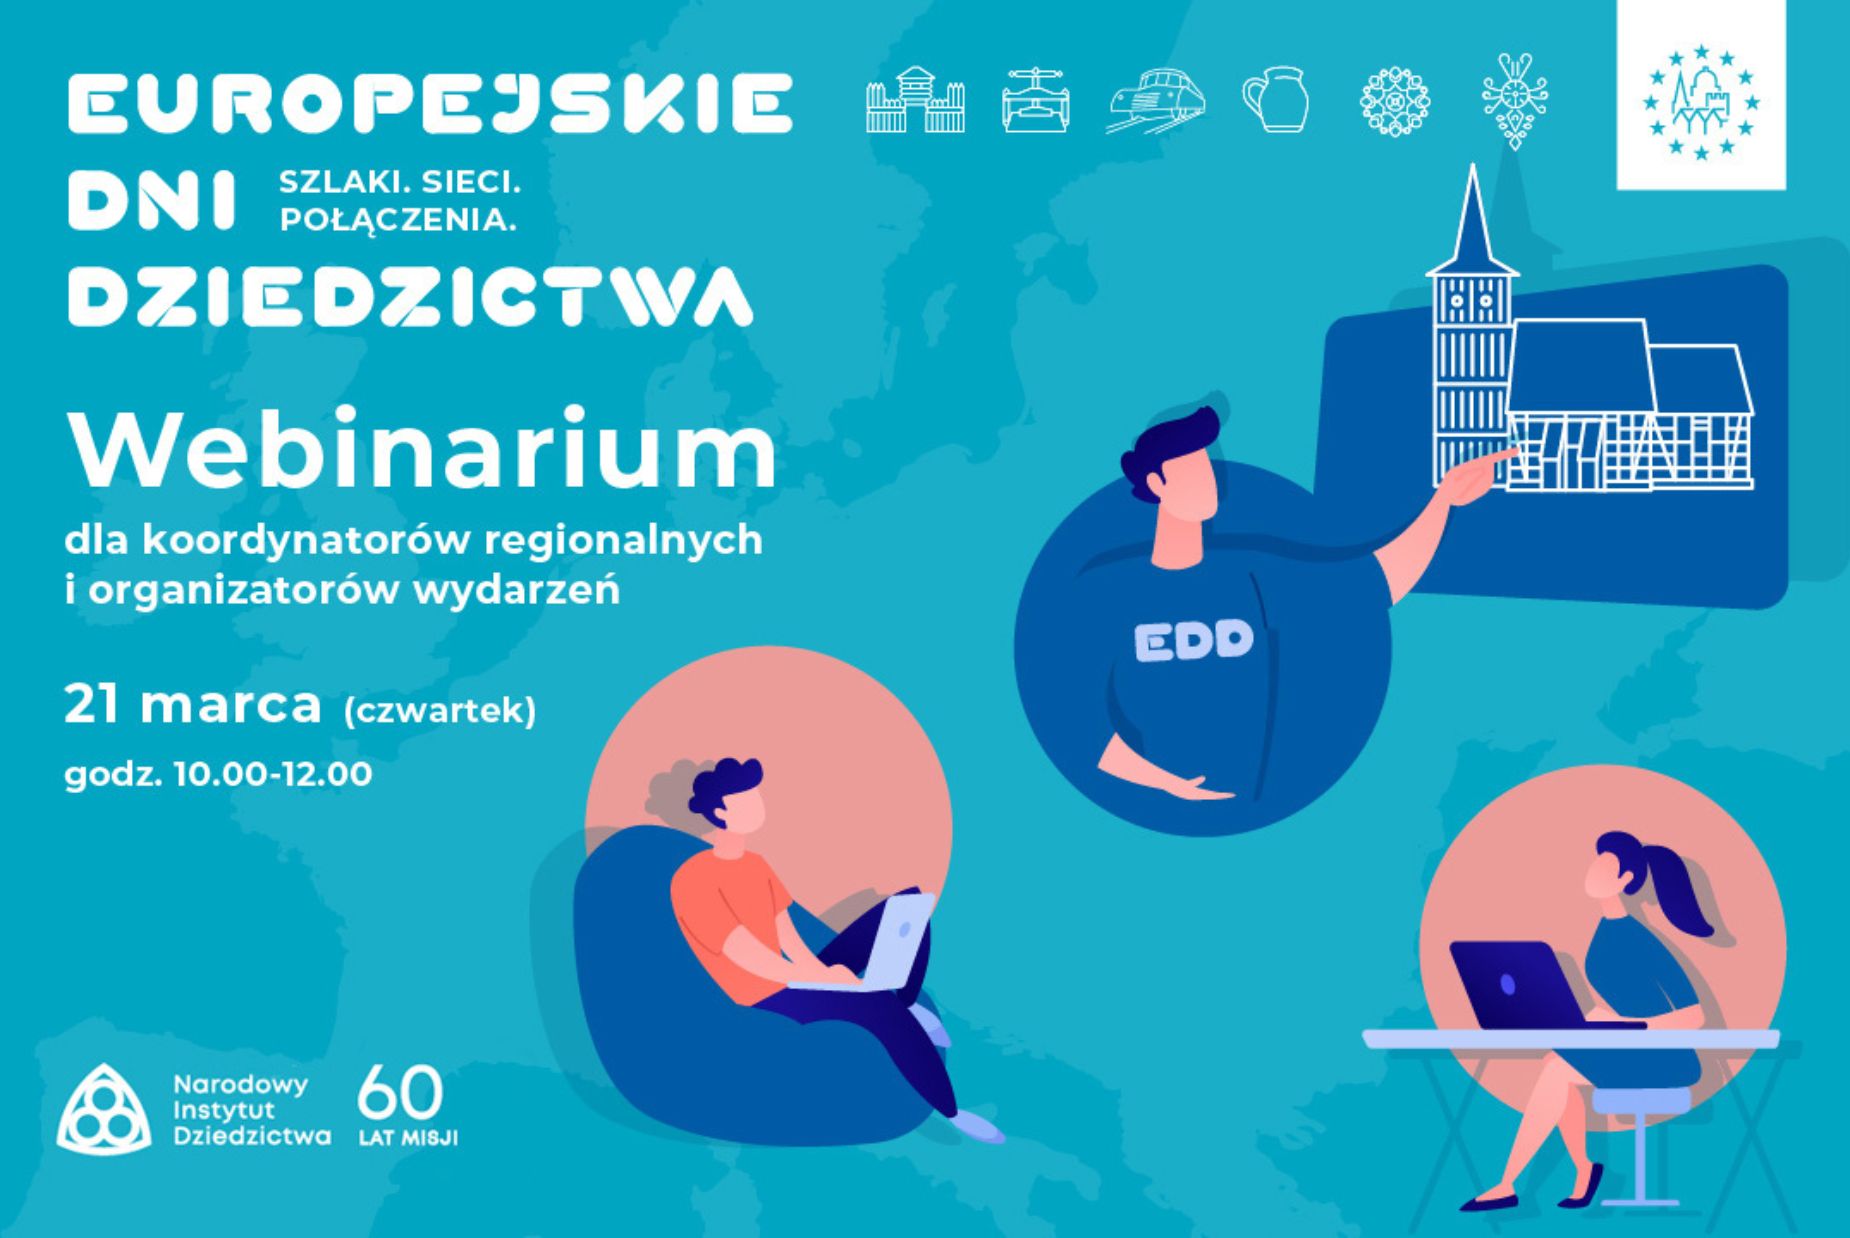 Zapraszamy koordynatorów regionalnych i organizatorów wydarzeń na webinarium dotyczące Europejskich Dni Dziedzictwa